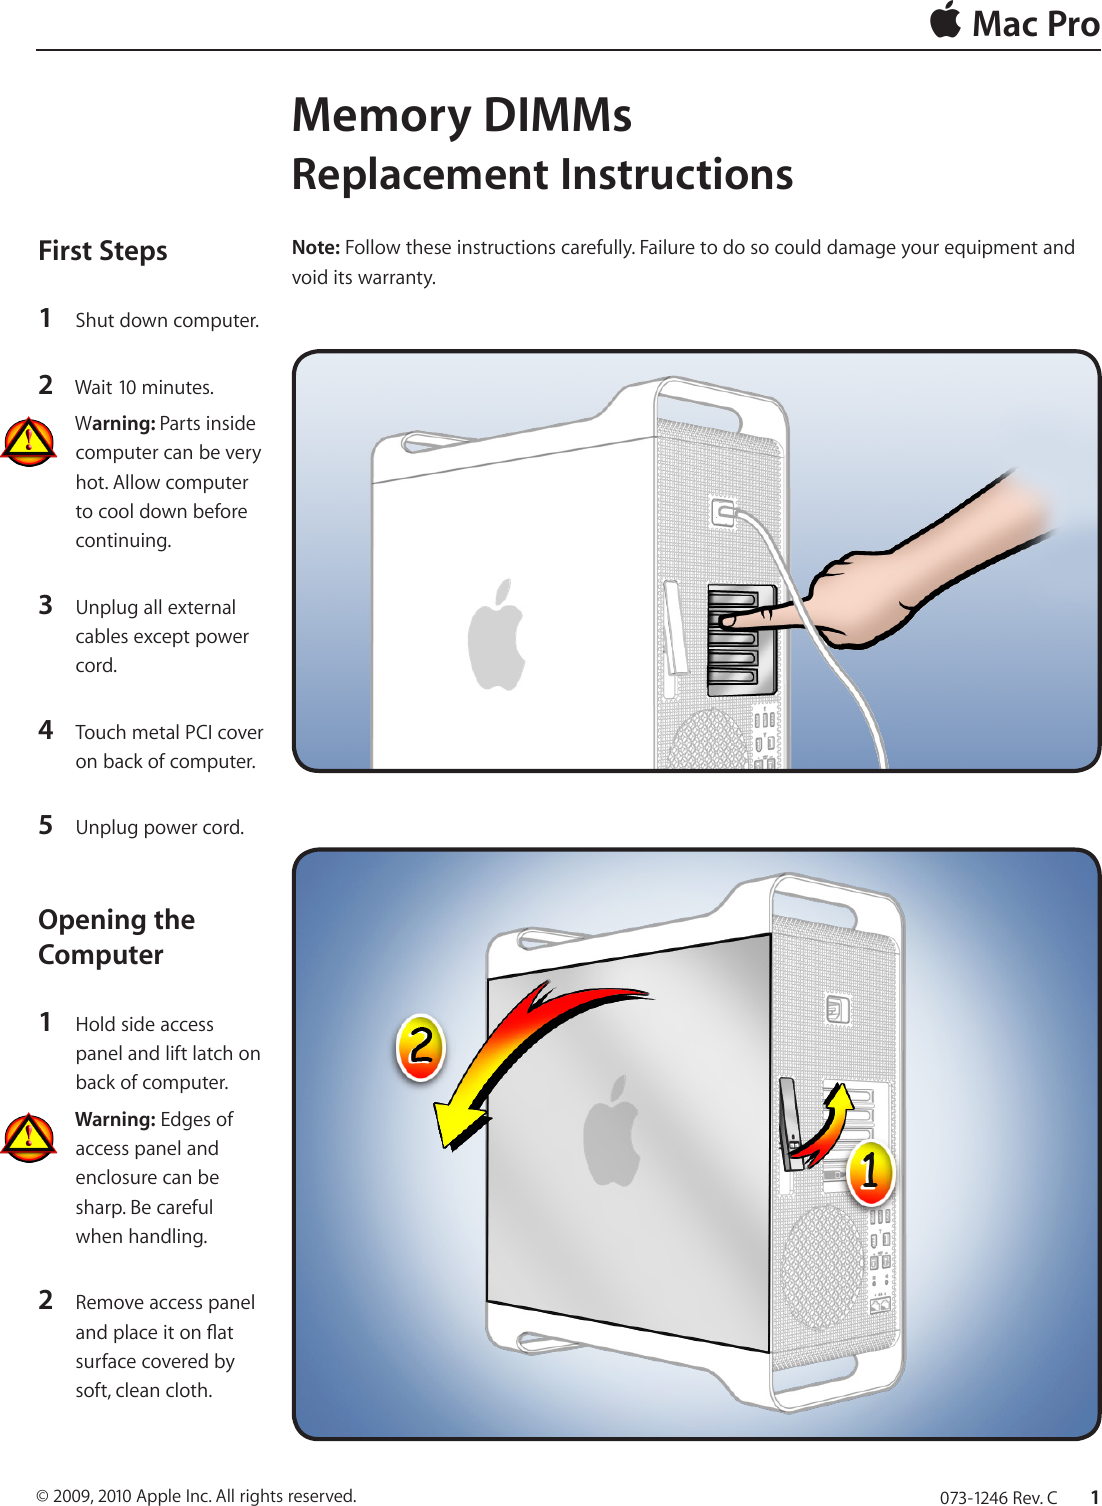 Apple Mac Pro Manual